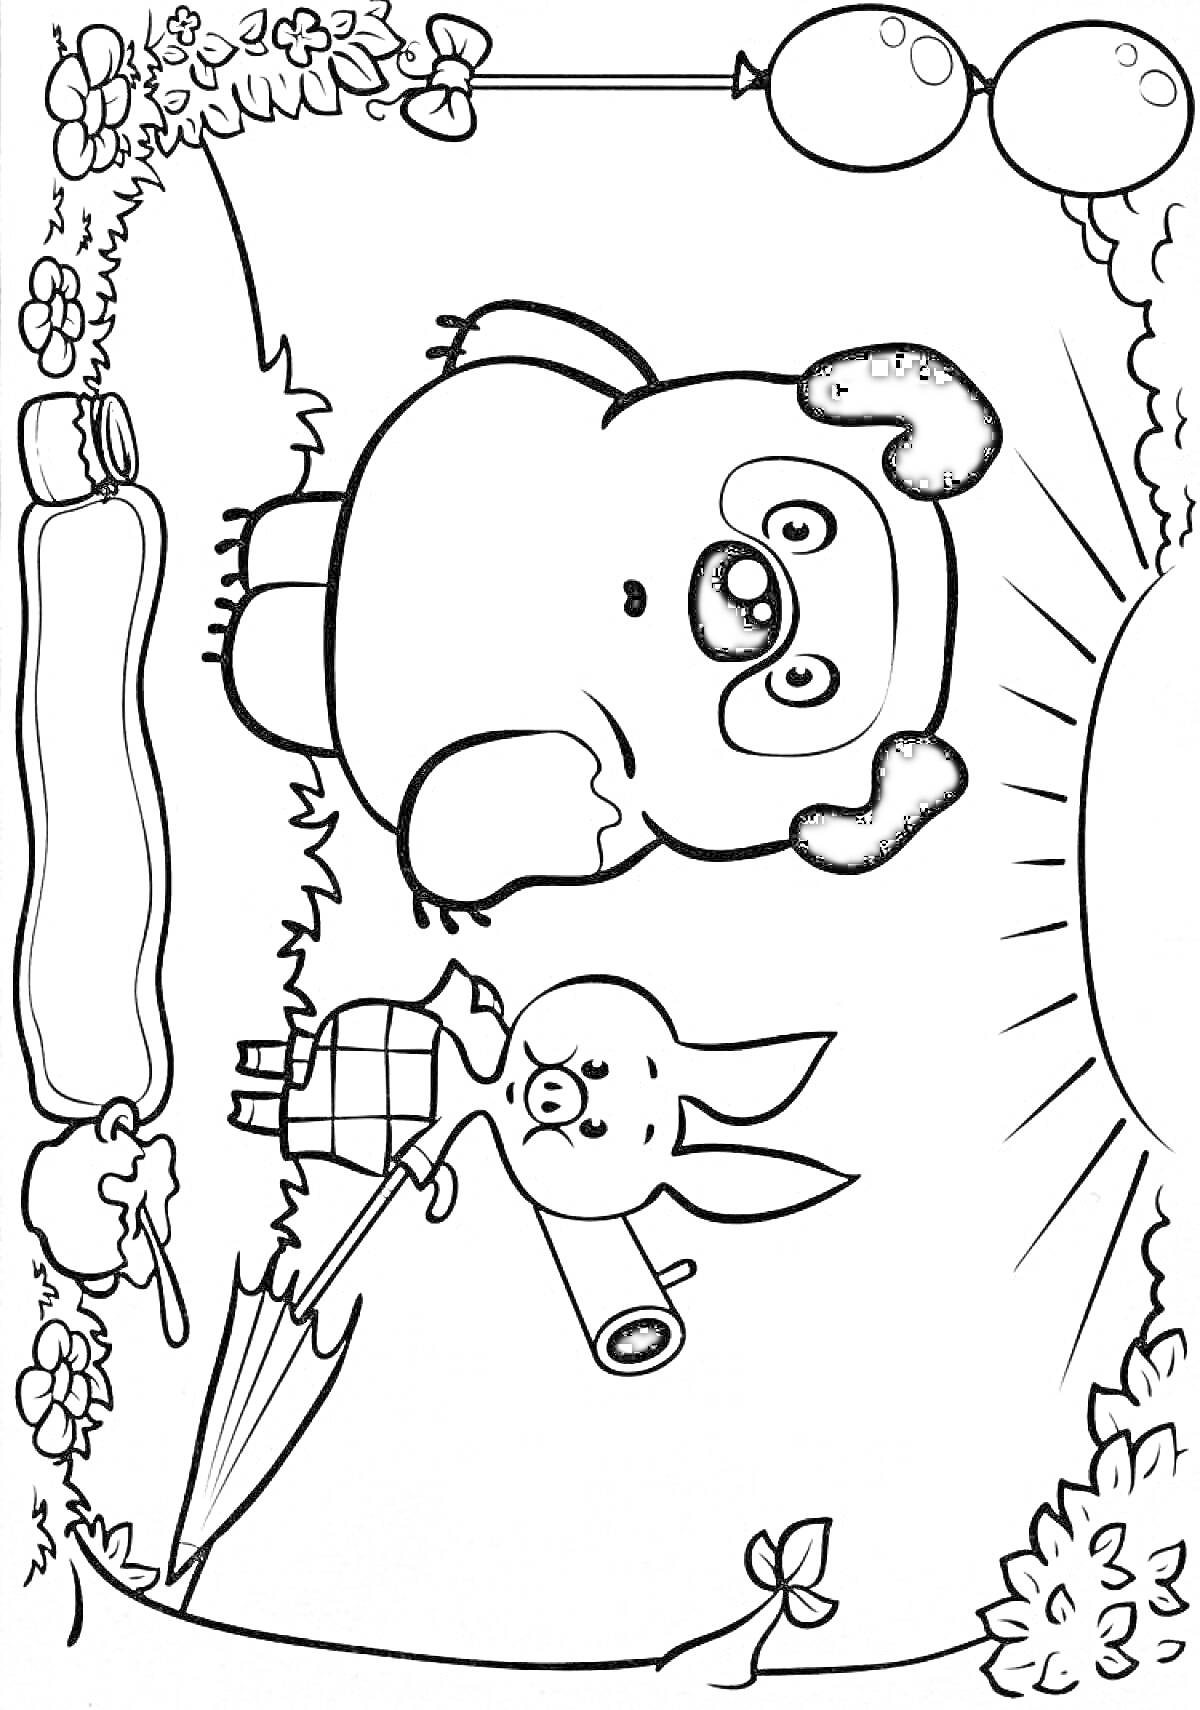 Раскраска Винни-Пух и Пятачок на поляне с зонтиком и воздушными шарами